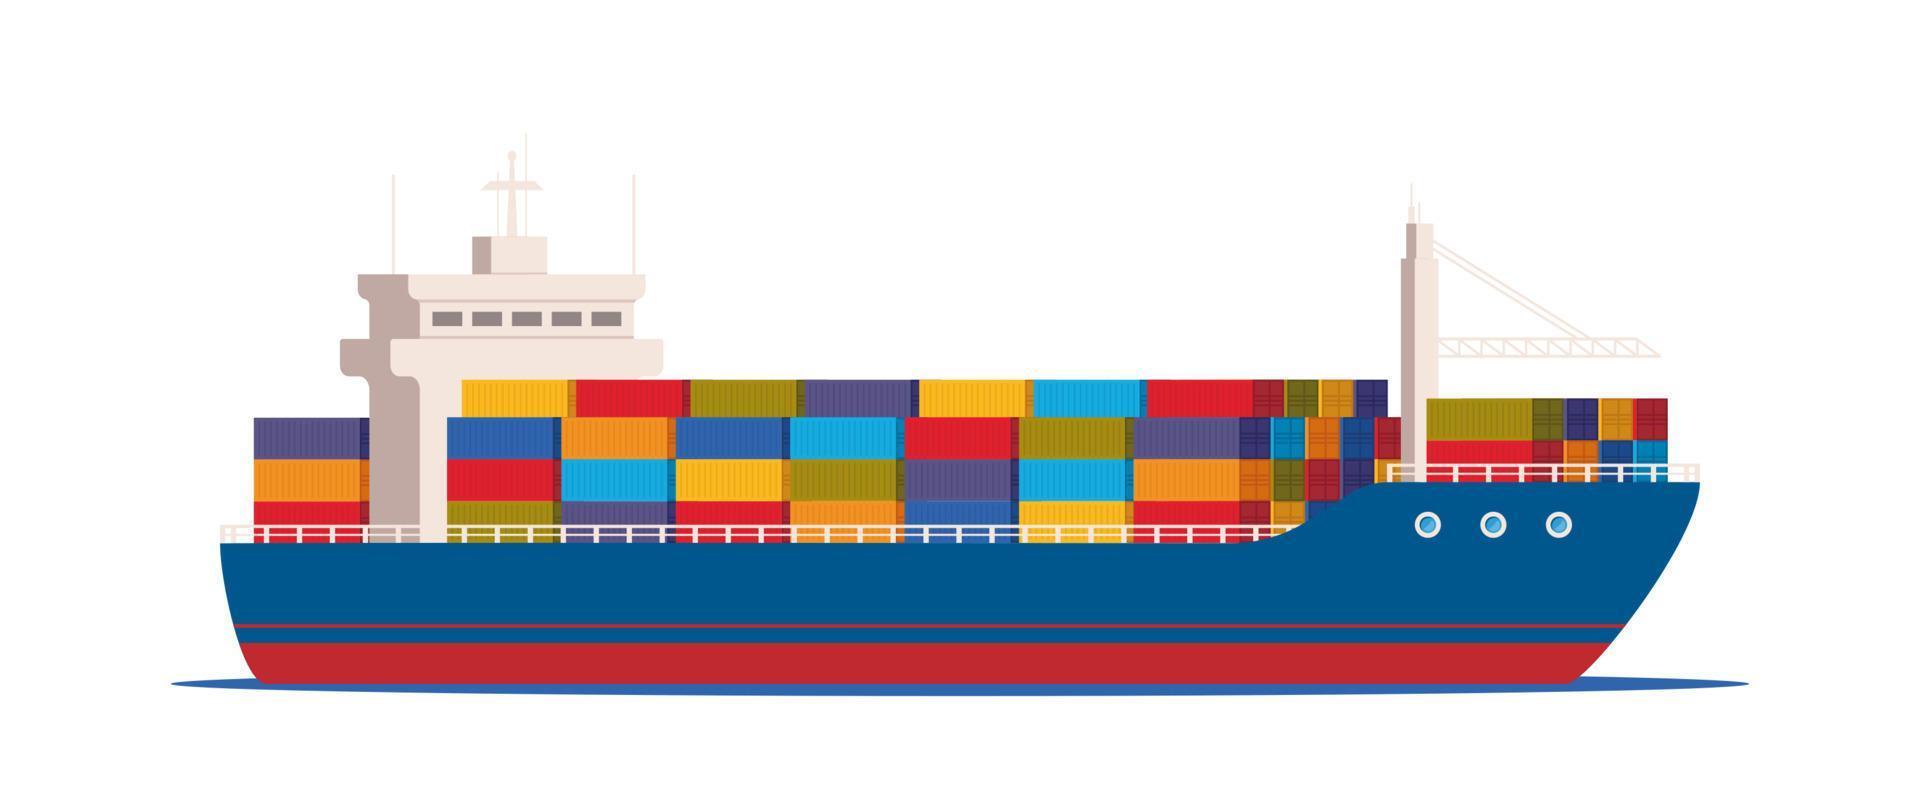 frakt fartyg med behållare i de hav. leverans, transport, frakt frakt transport. logistik begrepp vektor illustration.